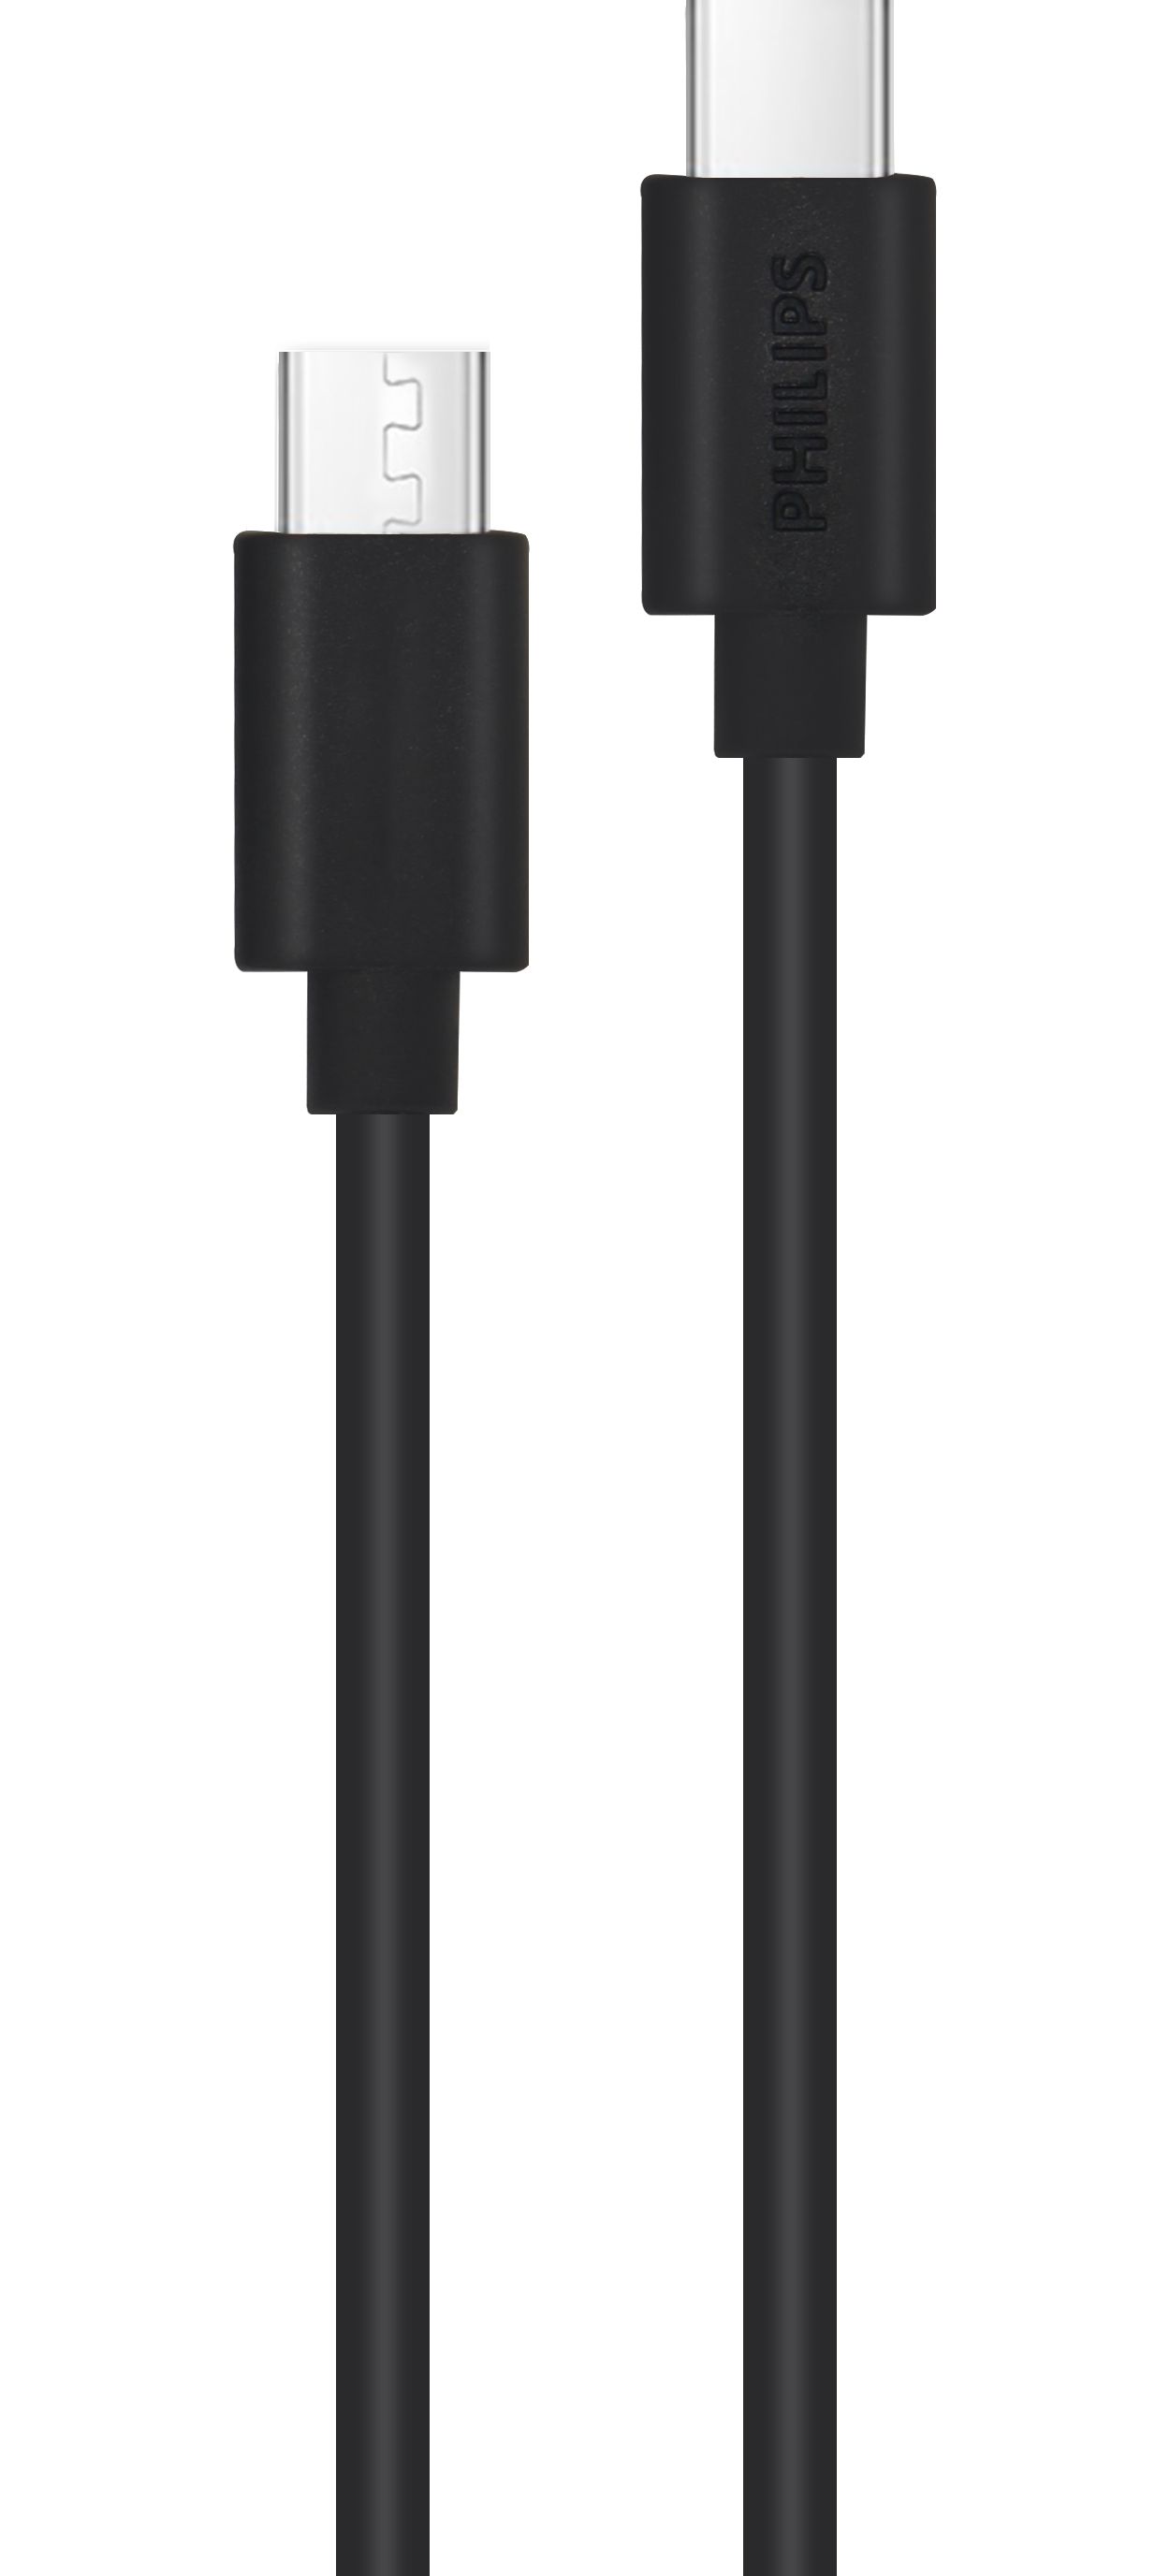 Kabel USB-C ke USB-C 2 m